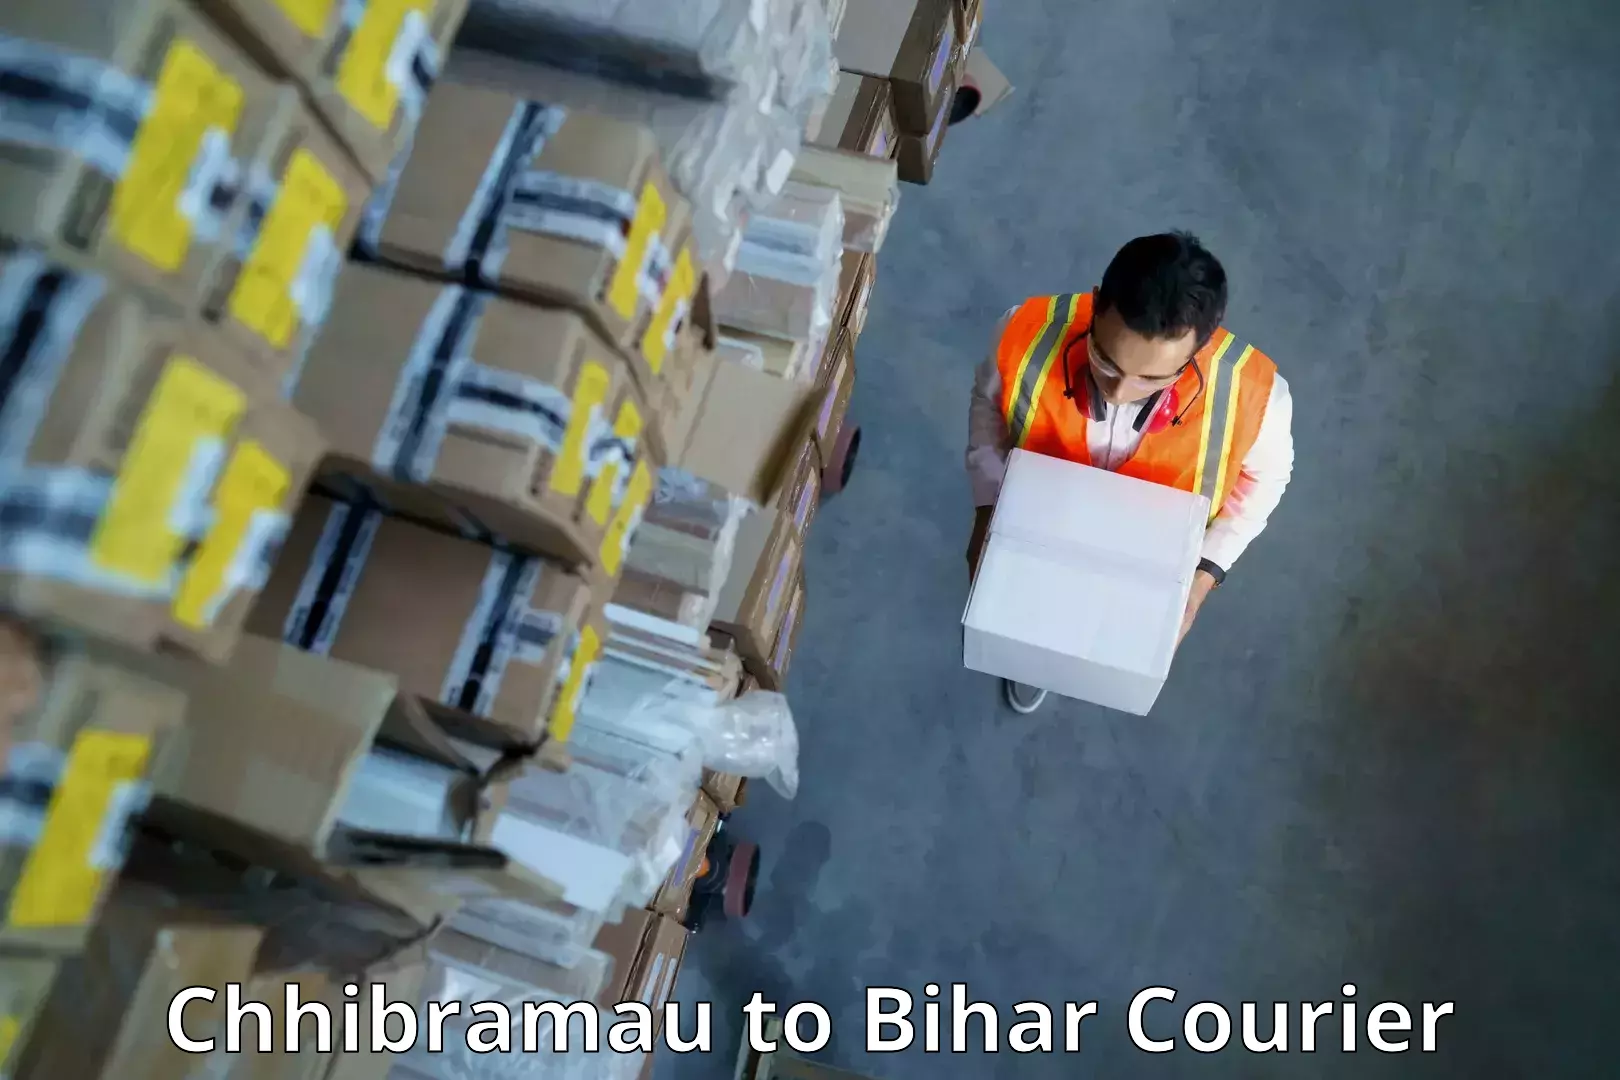 Express mail service Chhibramau to Bihar